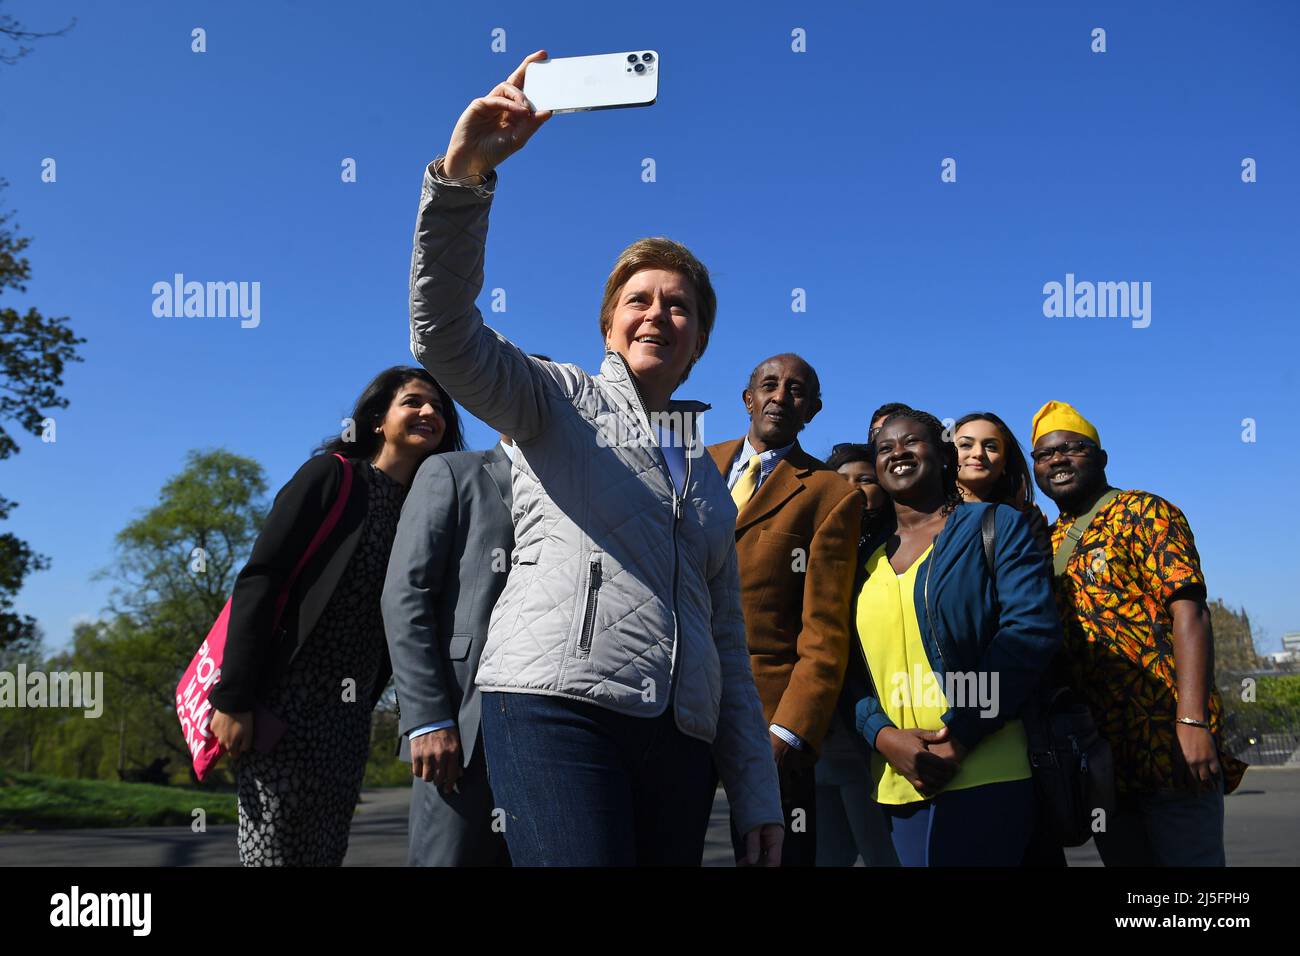 Schottlands erste Ministerin Nicola Sturgeon macht ein Selfie-Foto mit den Wahlkandidaten der Scottish National Party (SNP) im Kelvingrove Park, Glasgow, die sich für die Wahl der schwarzen, asiatischen und ethnischen Minderheiten im rat eingesetzt haben. Bilddatum: Samstag, 23. April 2022. Stockfoto